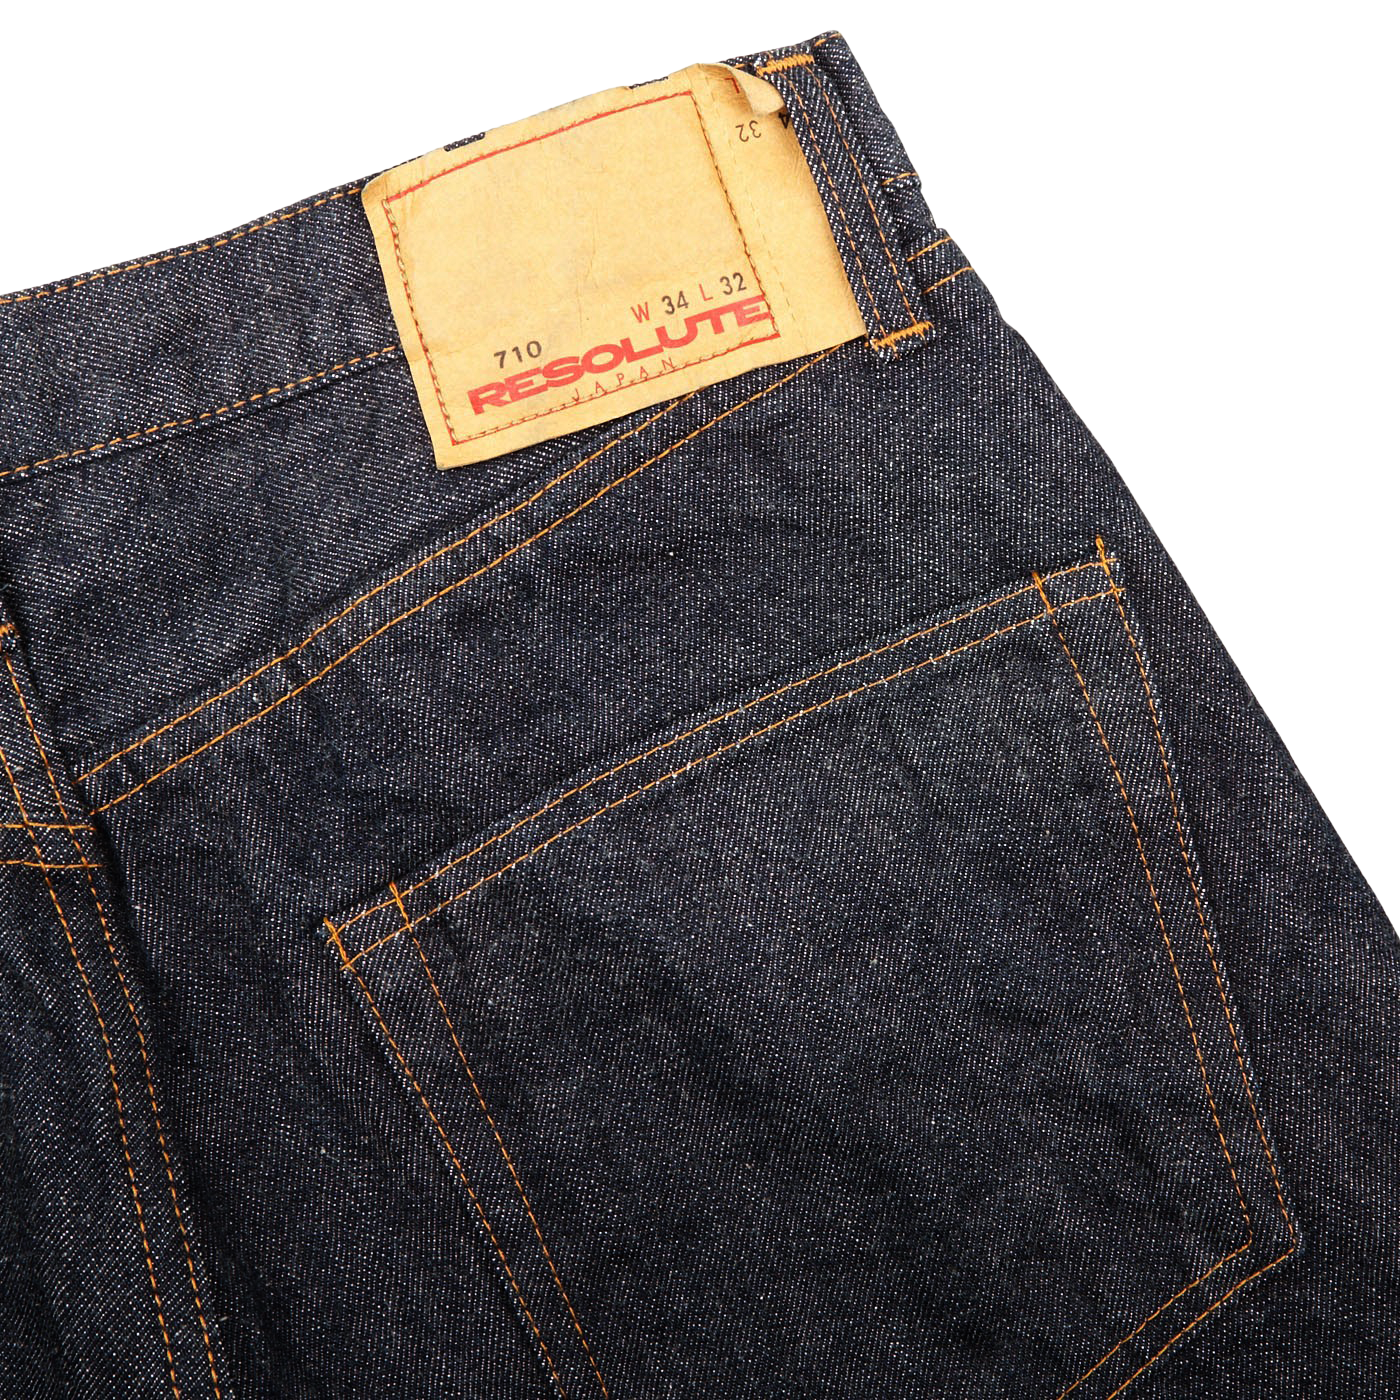 Resolute Dark Blue Cotton 710 One Wash Jeans Pocket